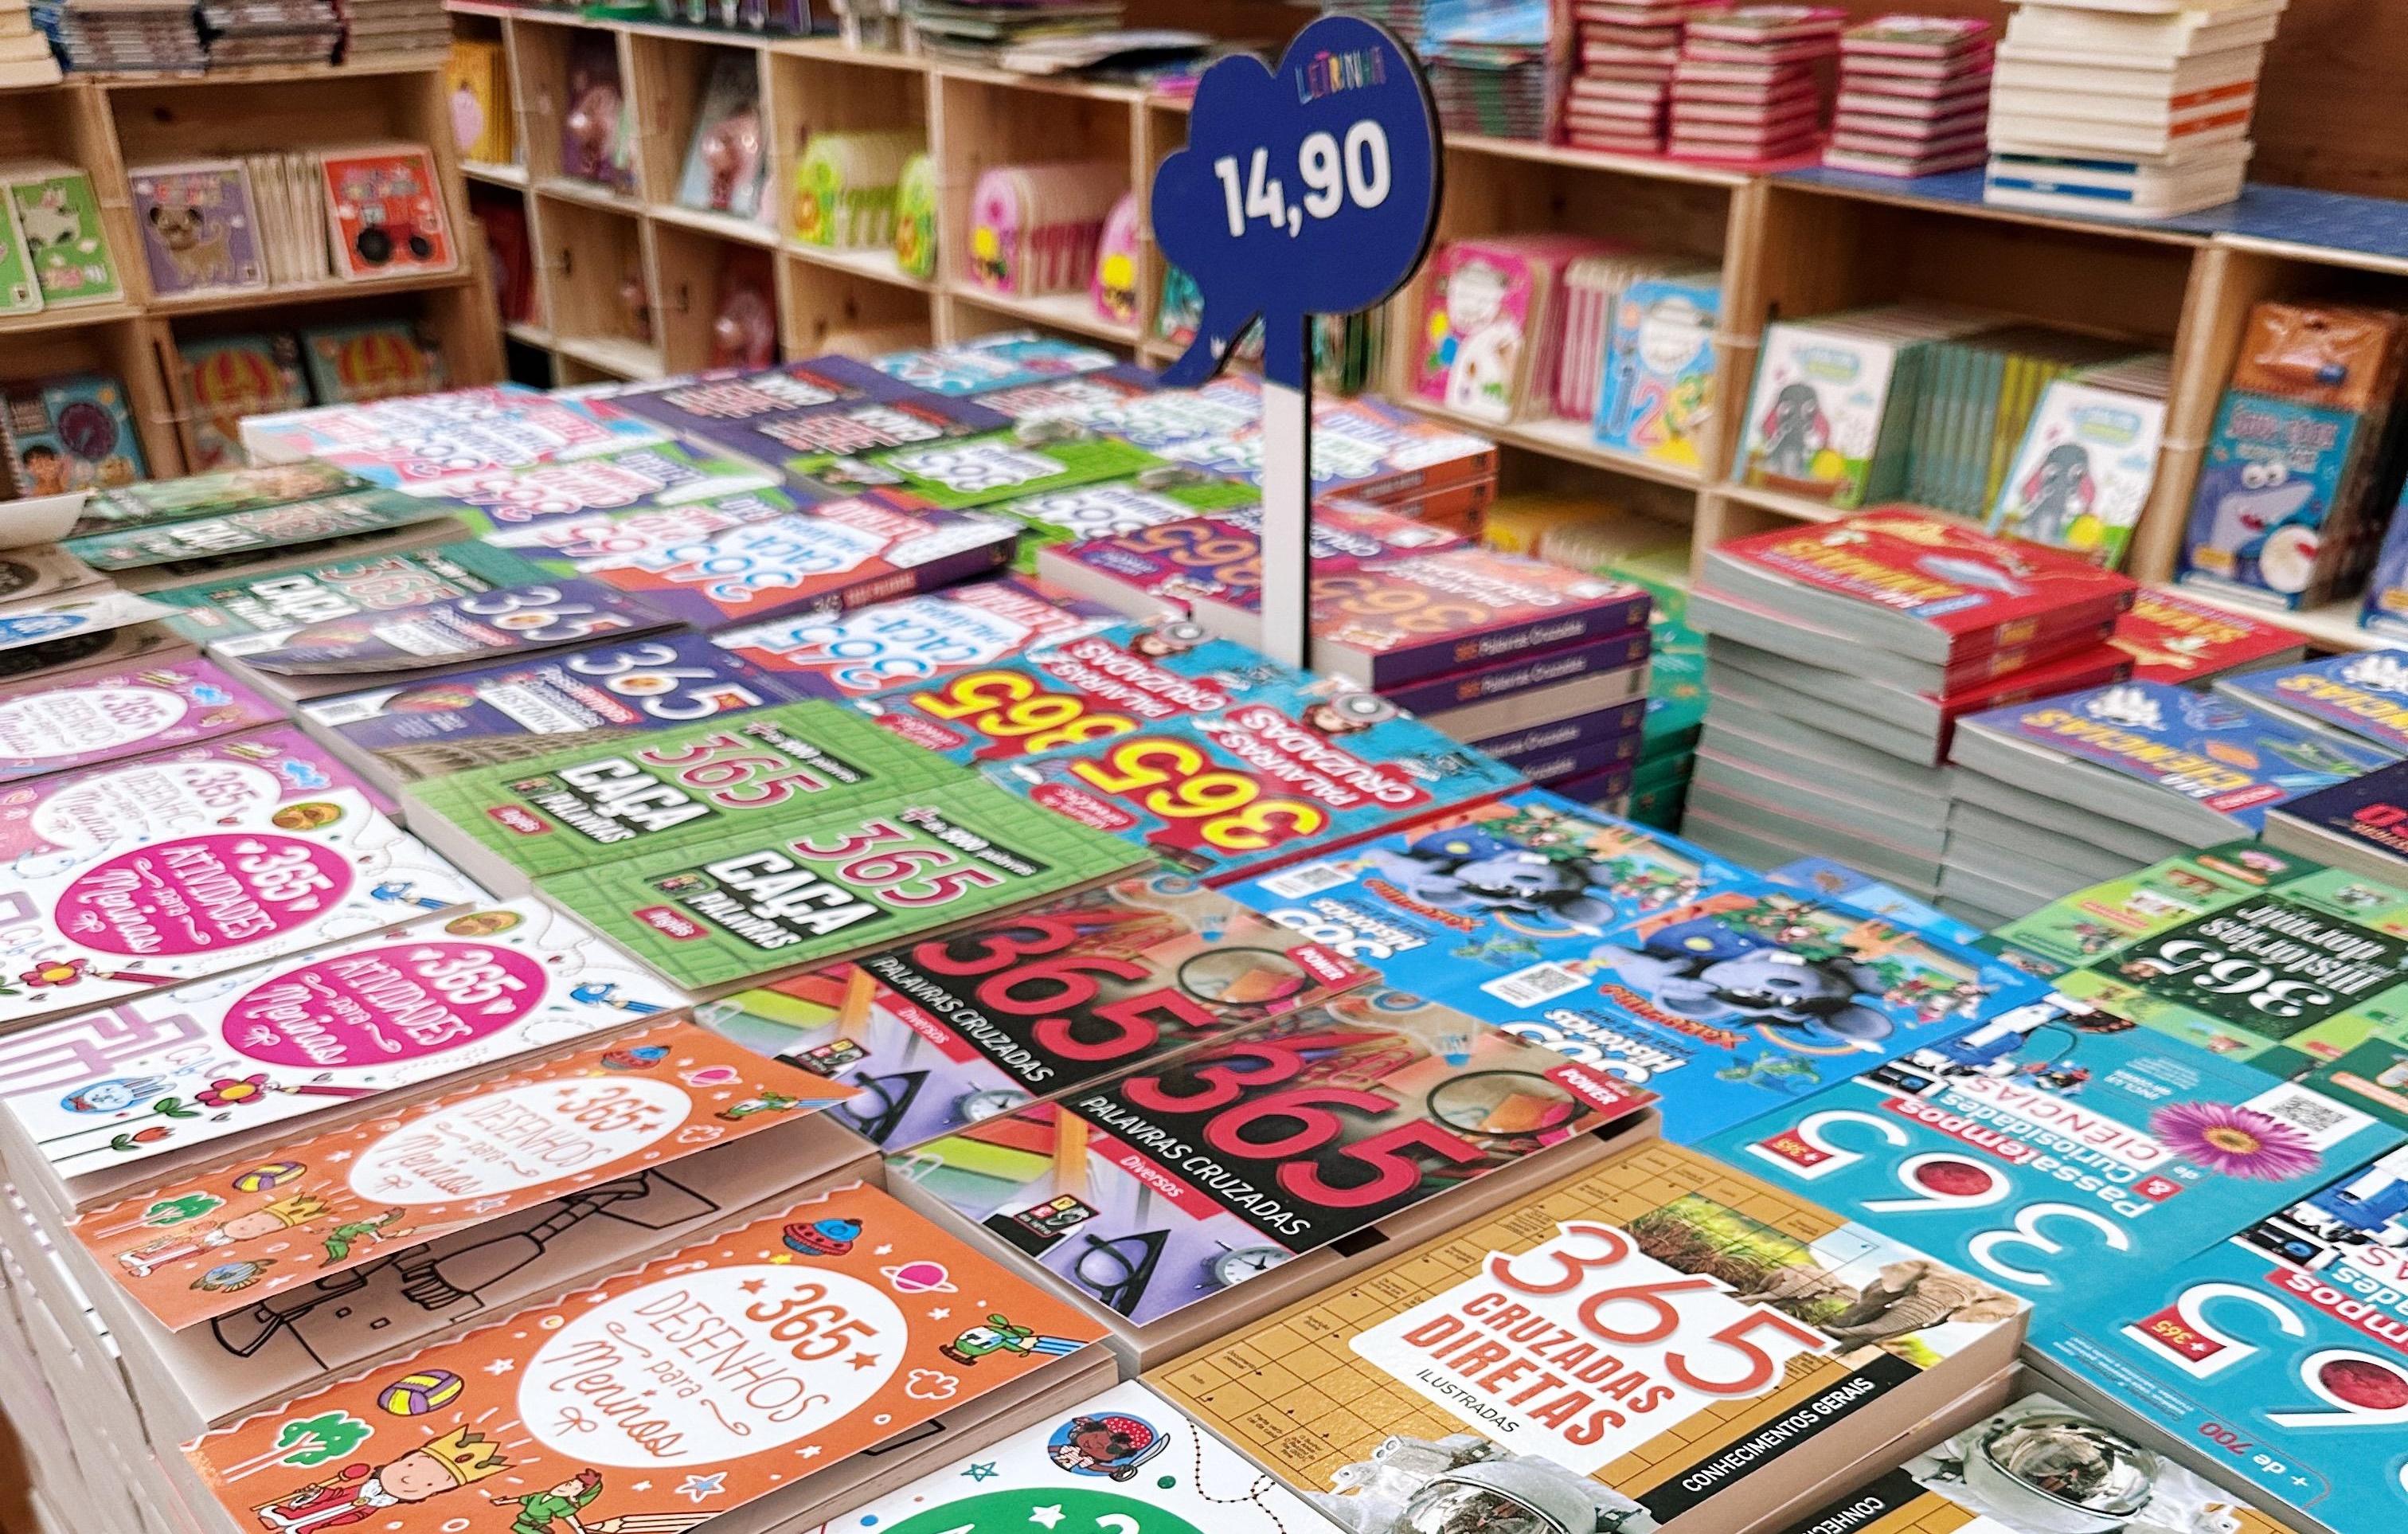  Goiânia recebe feira de livros com exemplares a partir de R$ 6,90